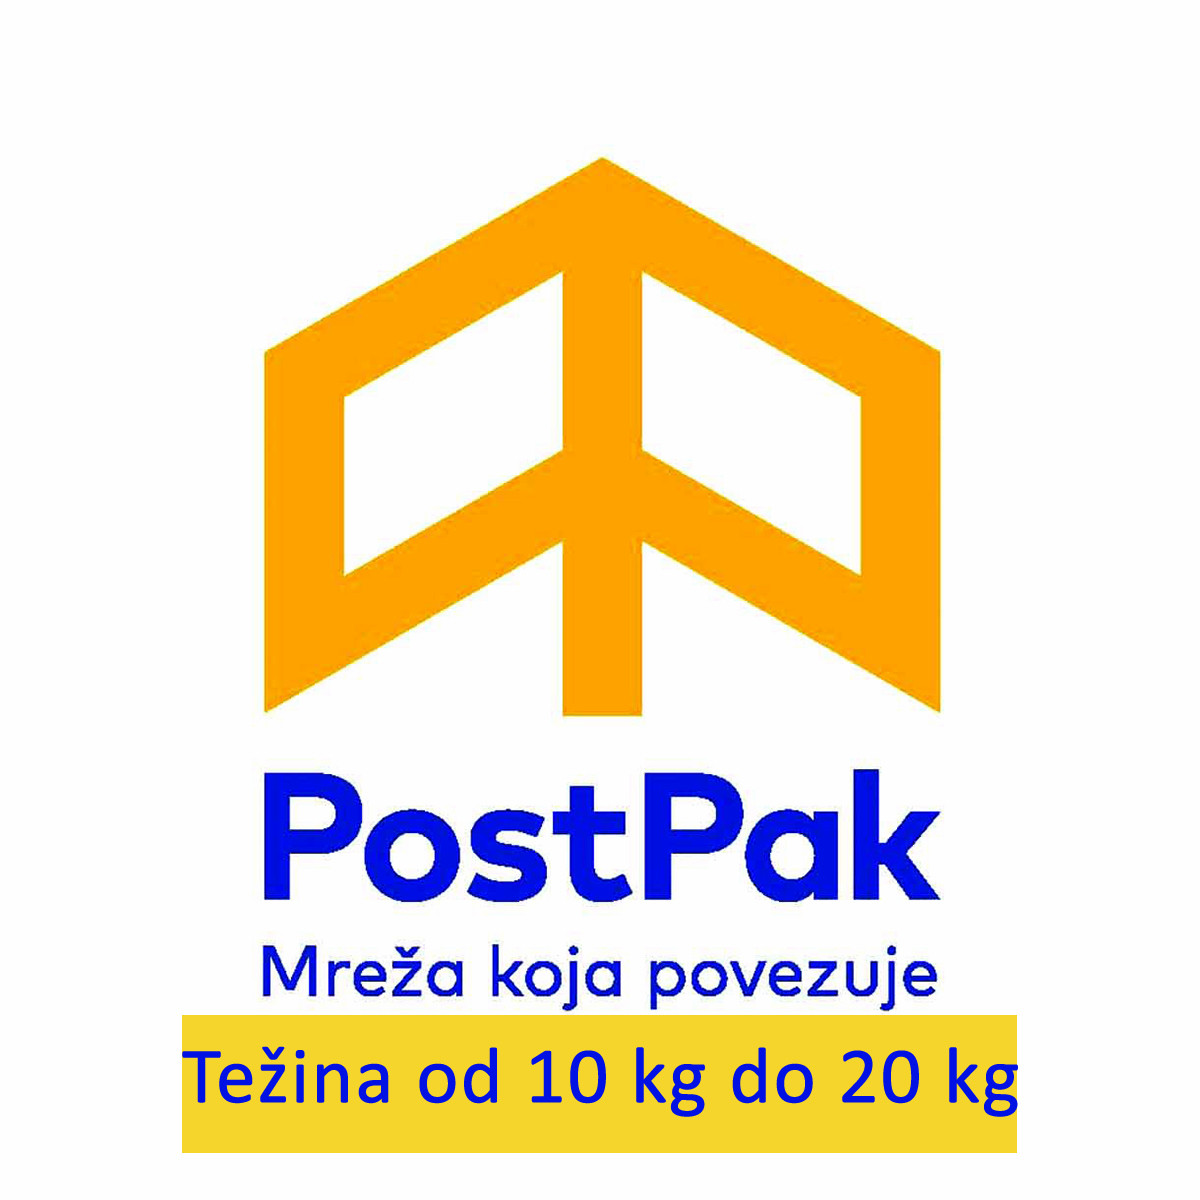 Poštarina BiH i CG od 10 kg do 20 kg 